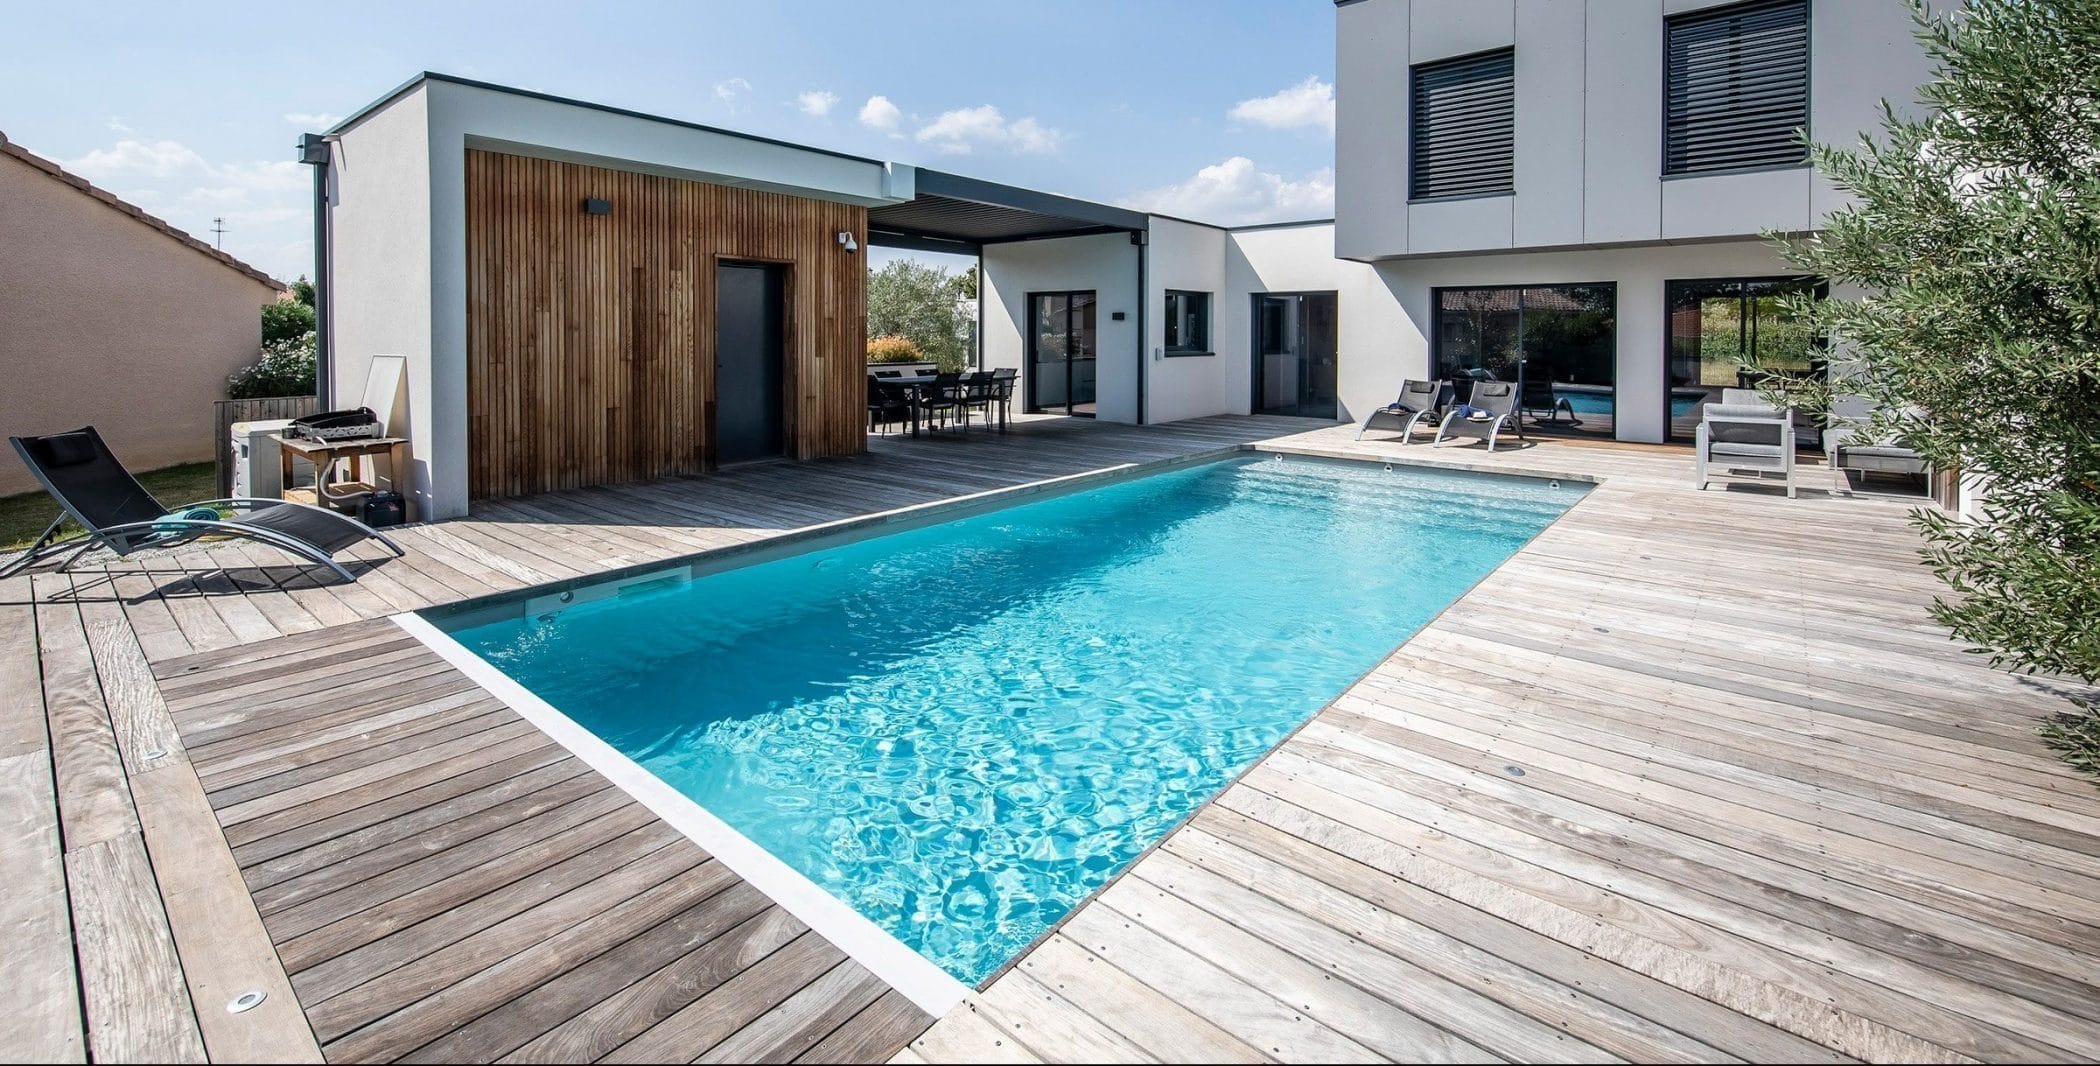 Maison moderne avec piscine connectée